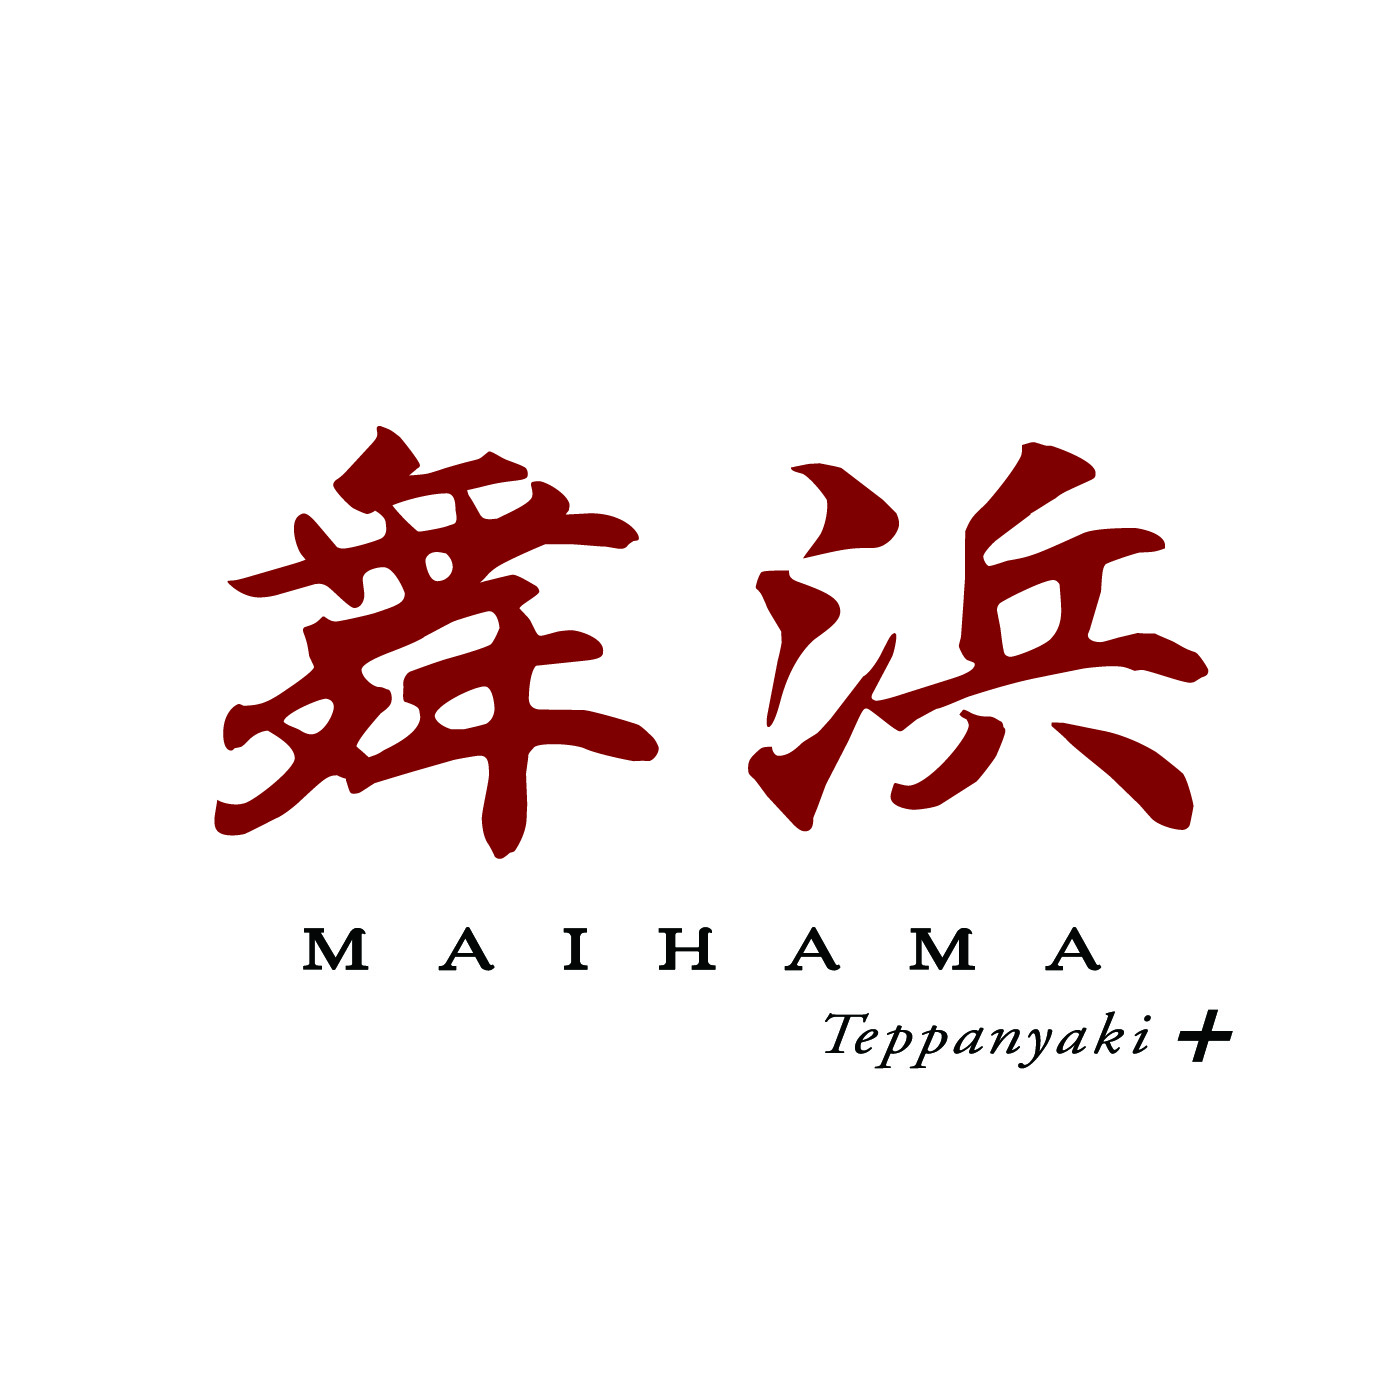 Maihama Teppanyaki+ Japan Best Restaurant